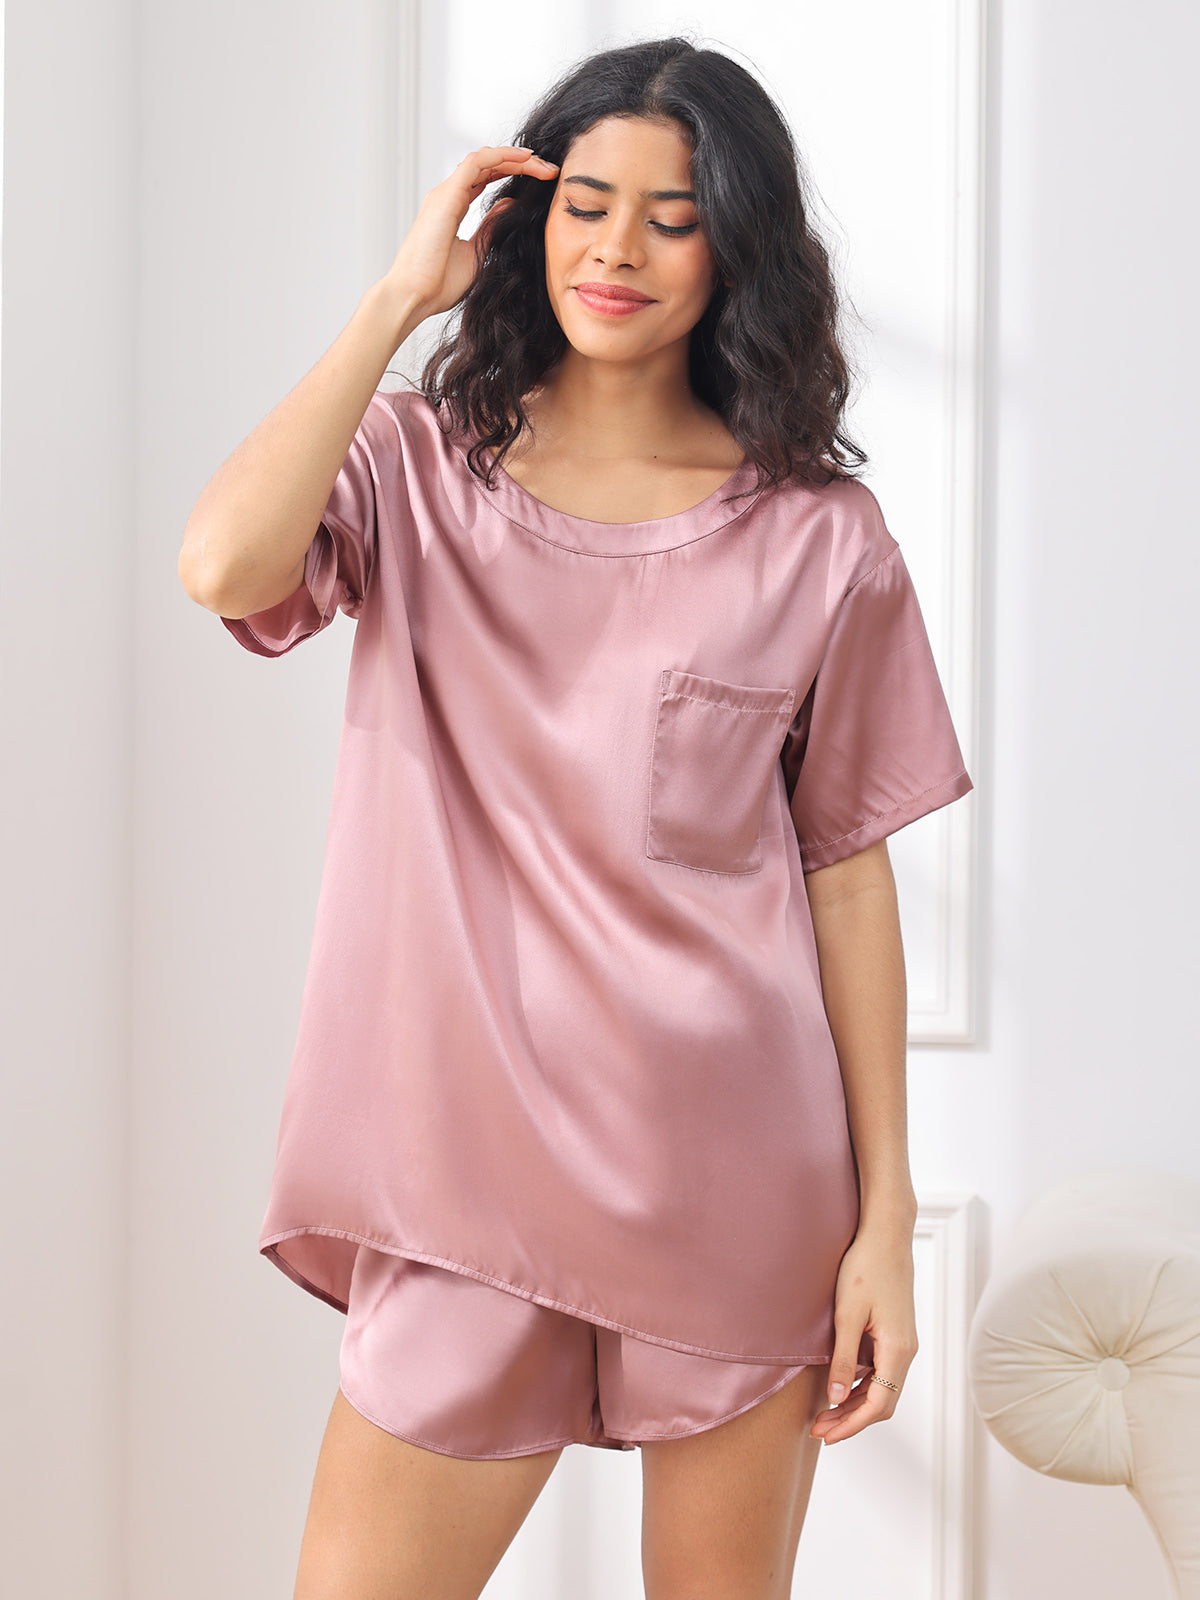 Silksilky Half Sleeve Lace Silky Pyjamas Set Pure Silk Pajamas